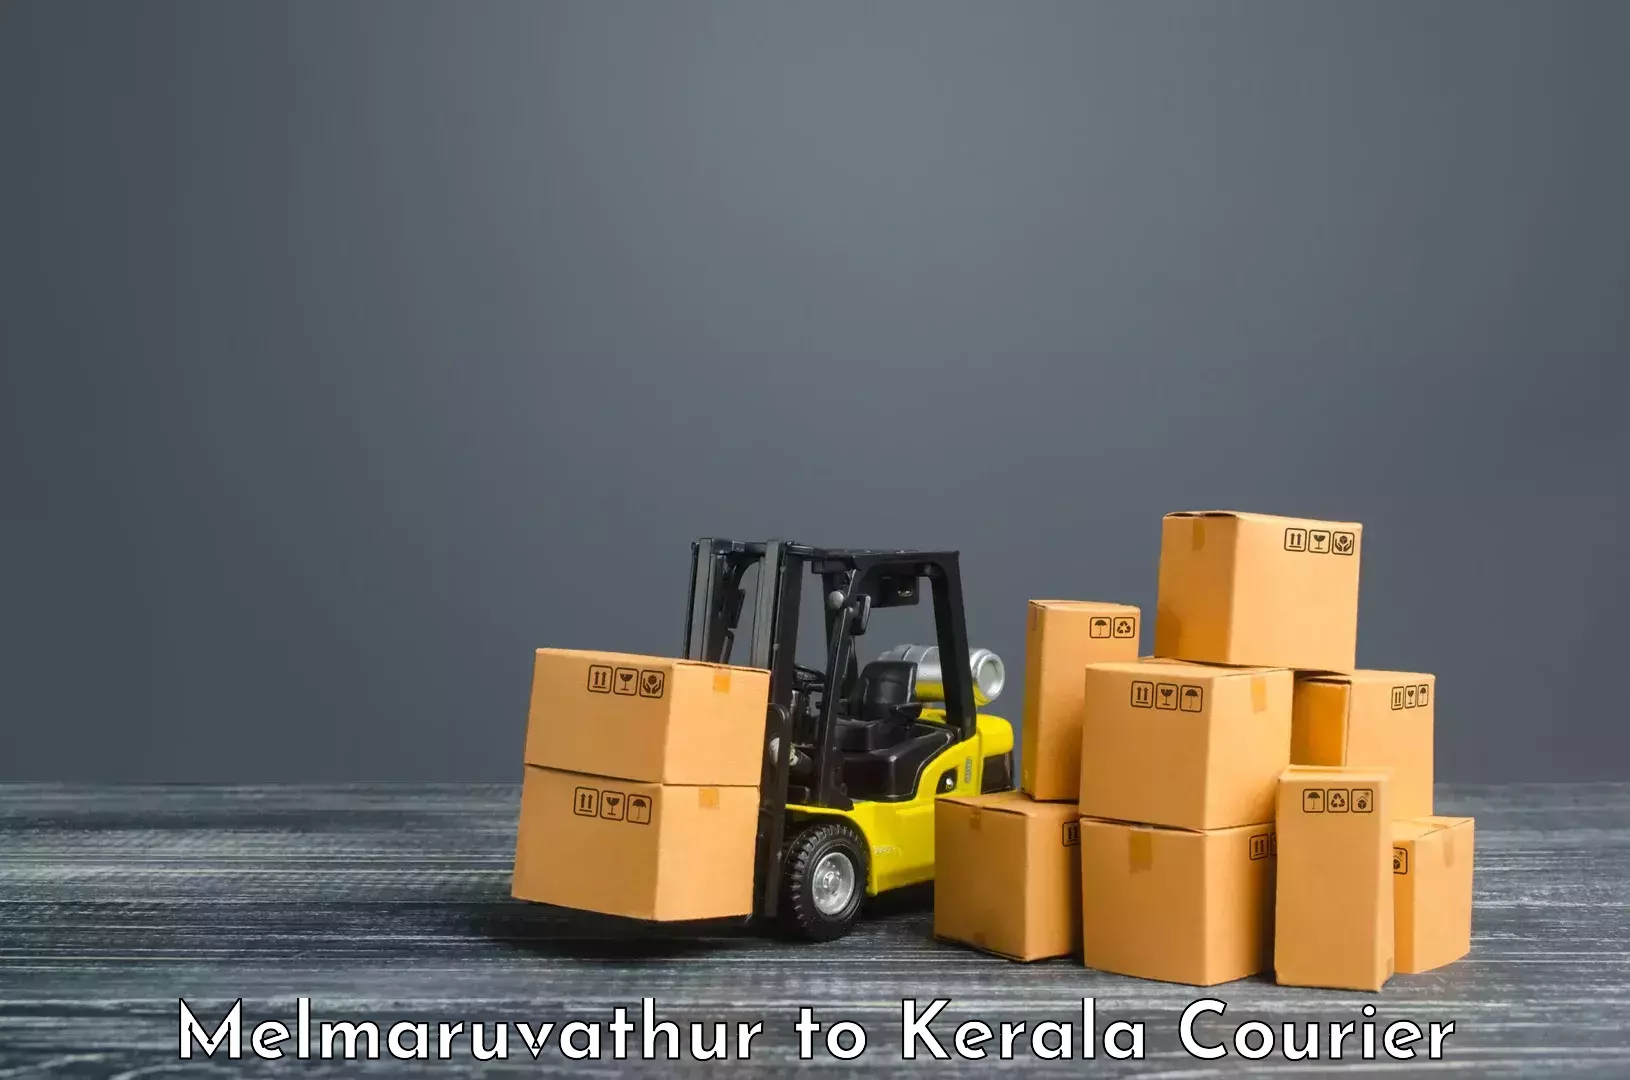 Digital courier platforms Melmaruvathur to Kerala